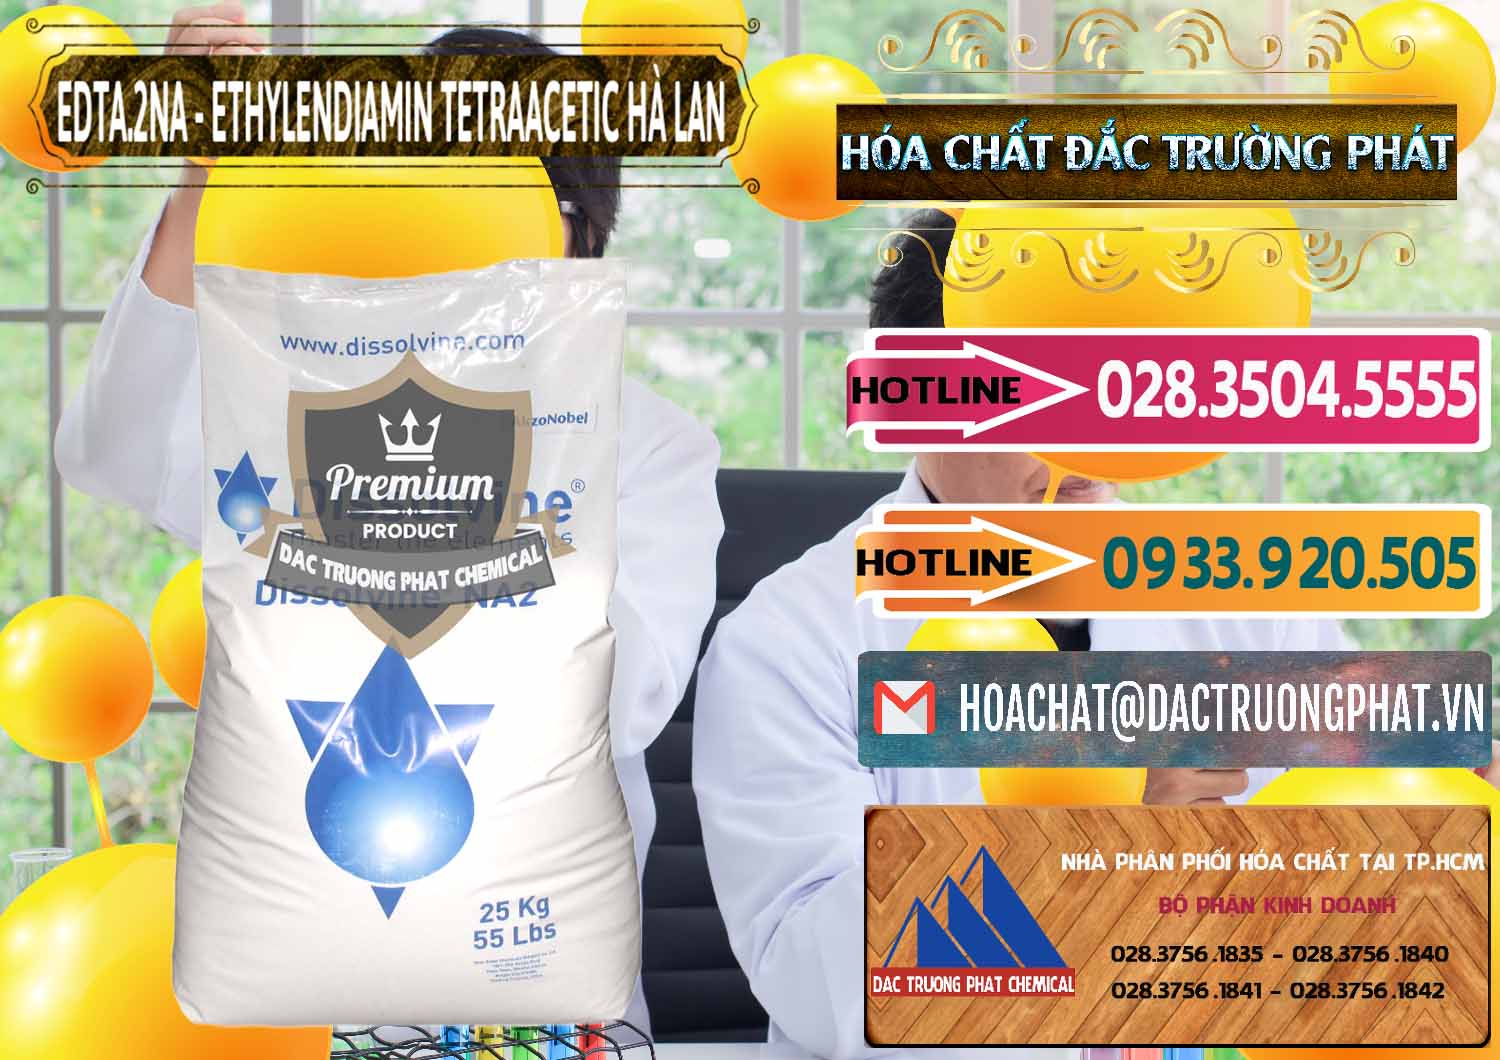 Đơn vị chuyên cung cấp - bán EDTA.2NA - Ethylendiamin Tetraacetic Dissolvine Hà Lan Netherlands - 0064 - Nơi phân phối _ cung ứng hóa chất tại TP.HCM - dactruongphat.vn